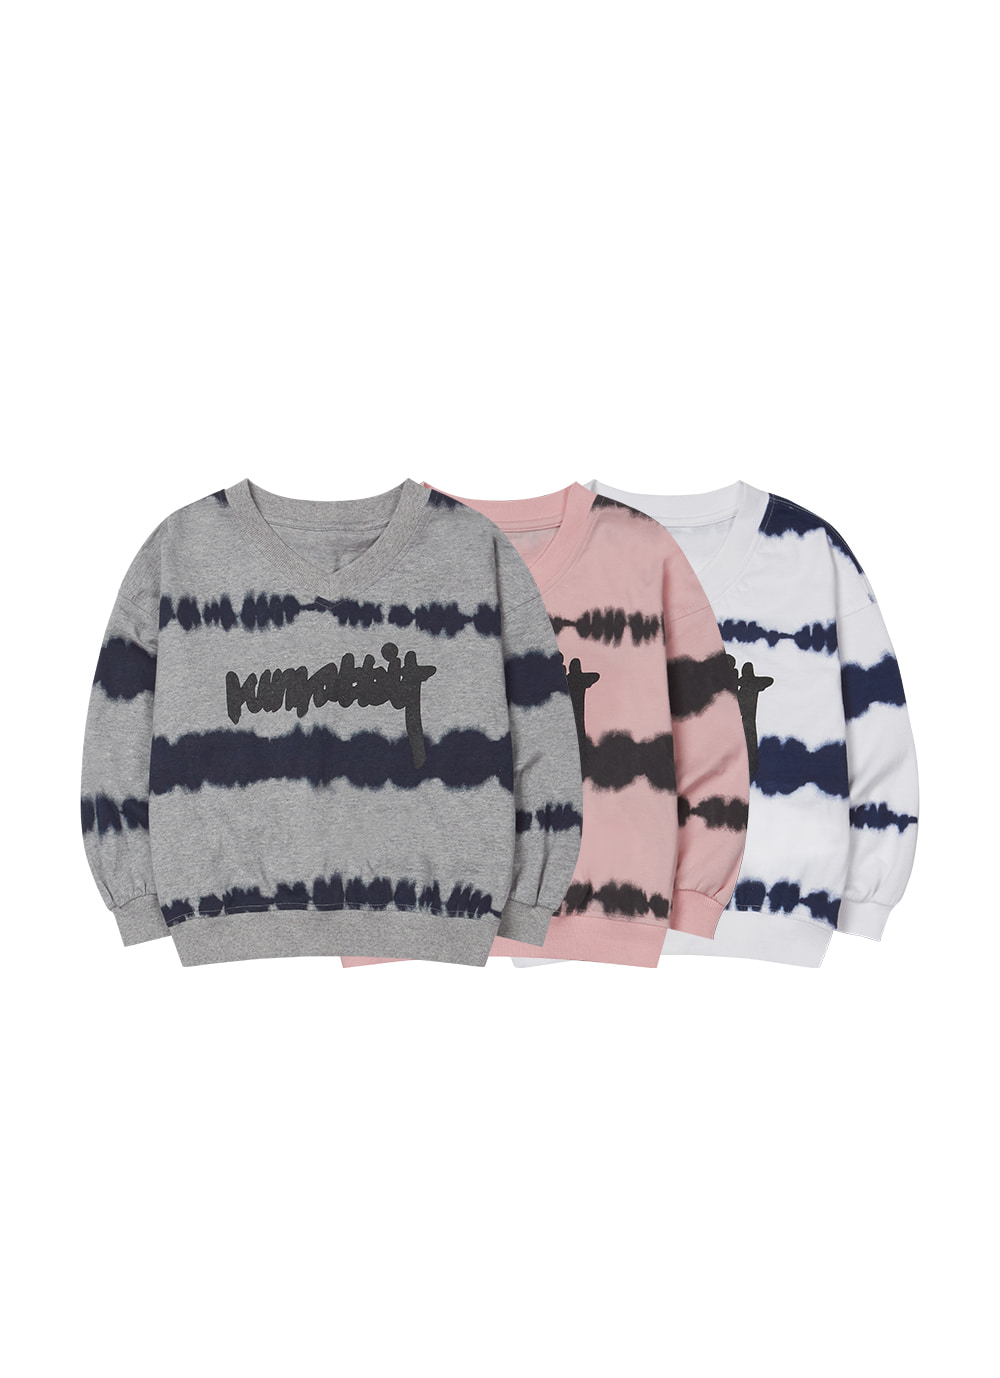 Cloudy Tie-Dye Sweatshirt